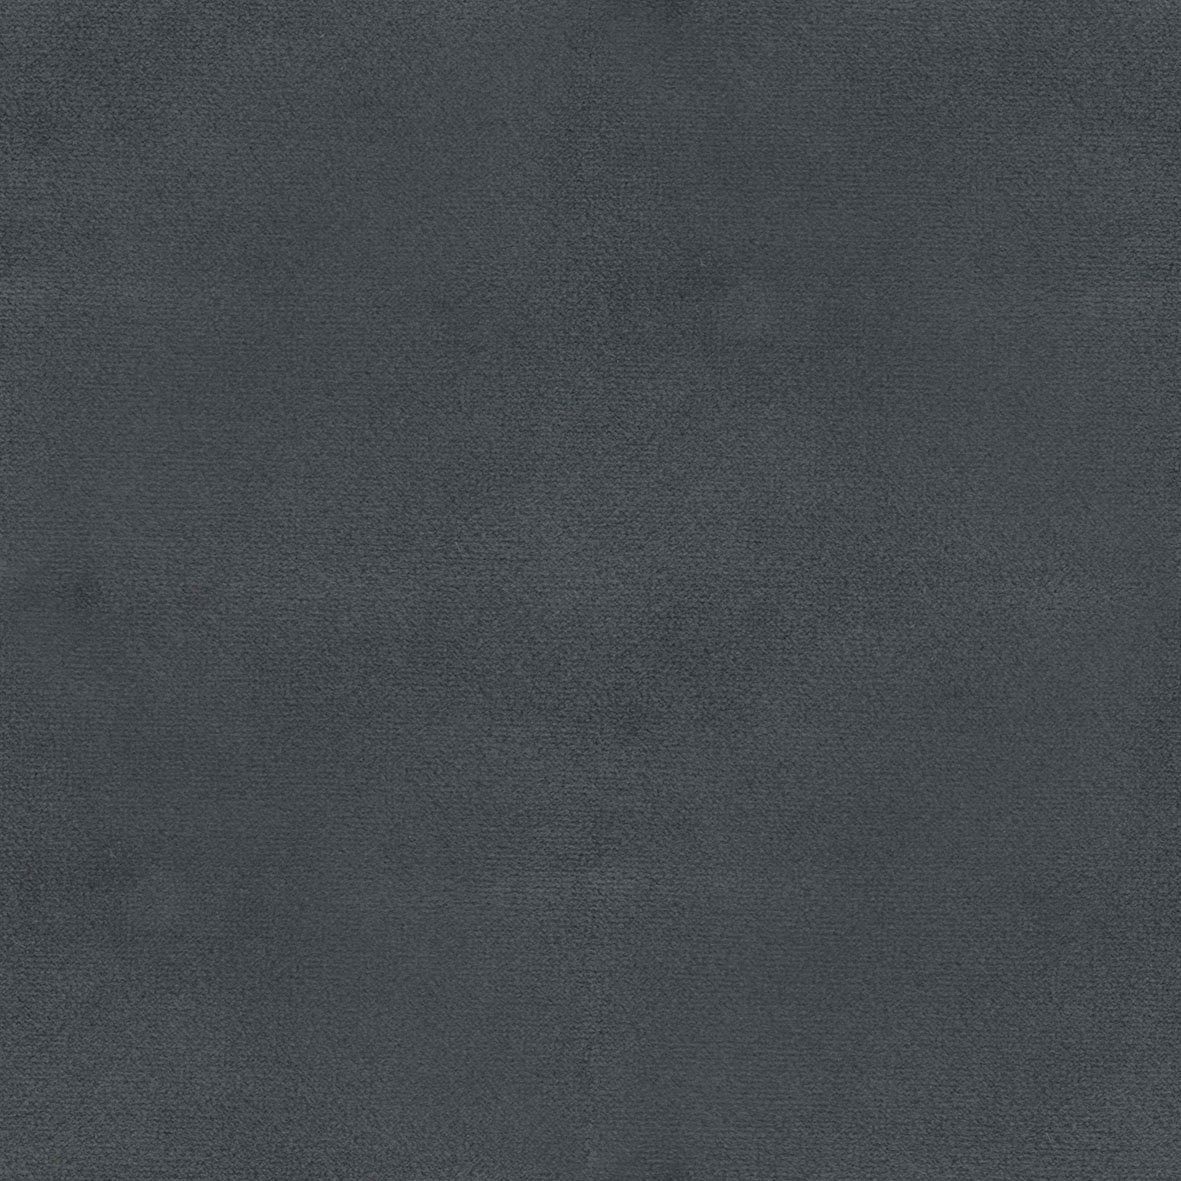 TOM HOME dark mit Knöpfen Rücken, NEW WAVE 219 im TSV CHIC, TAILOR 2-Sitzer Breite 39 cm grey